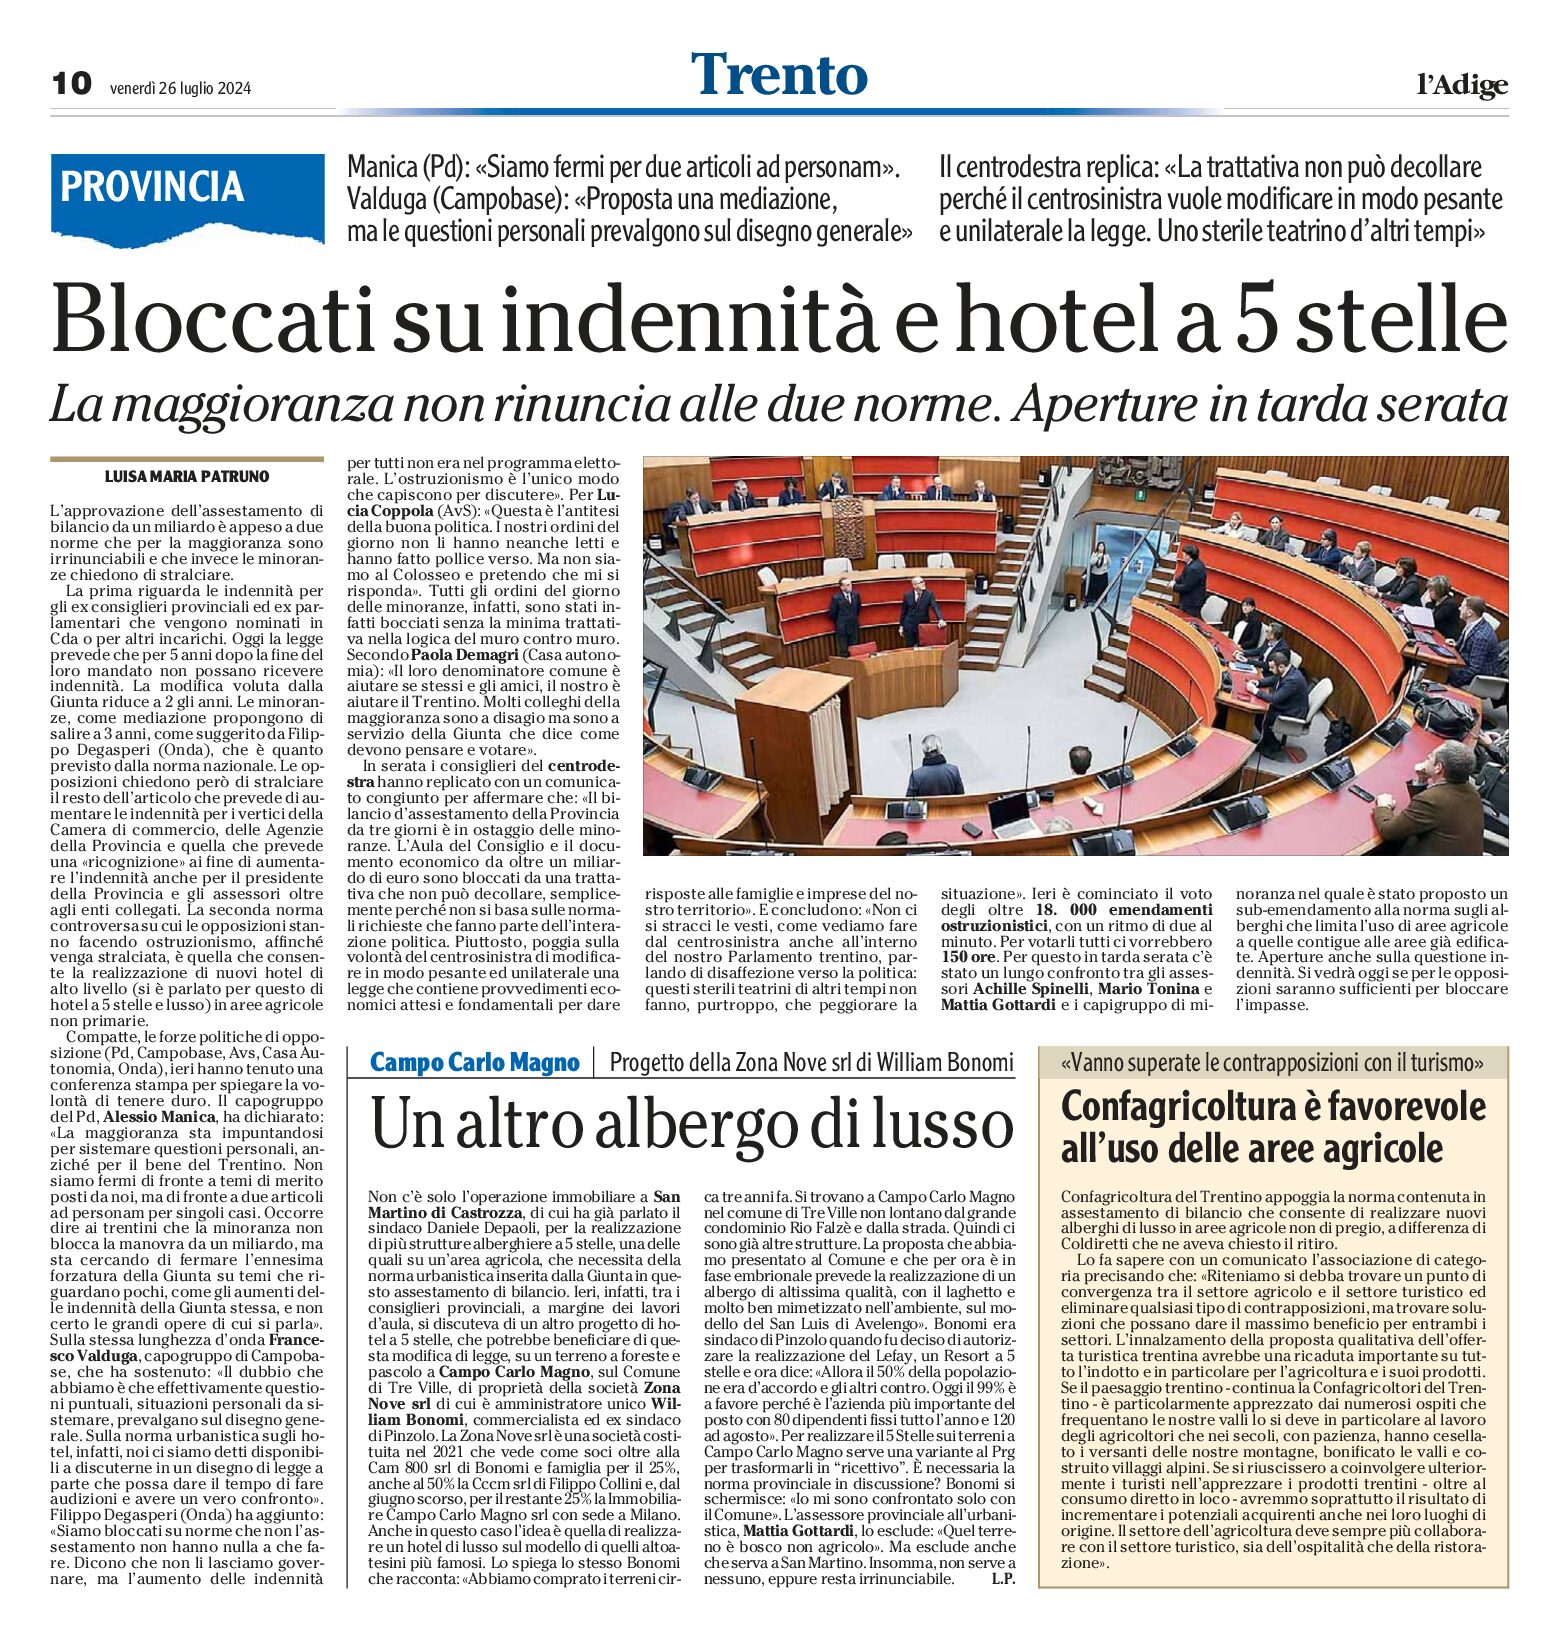 Trento, Provincia: bloccati sugli alberghi di lusso